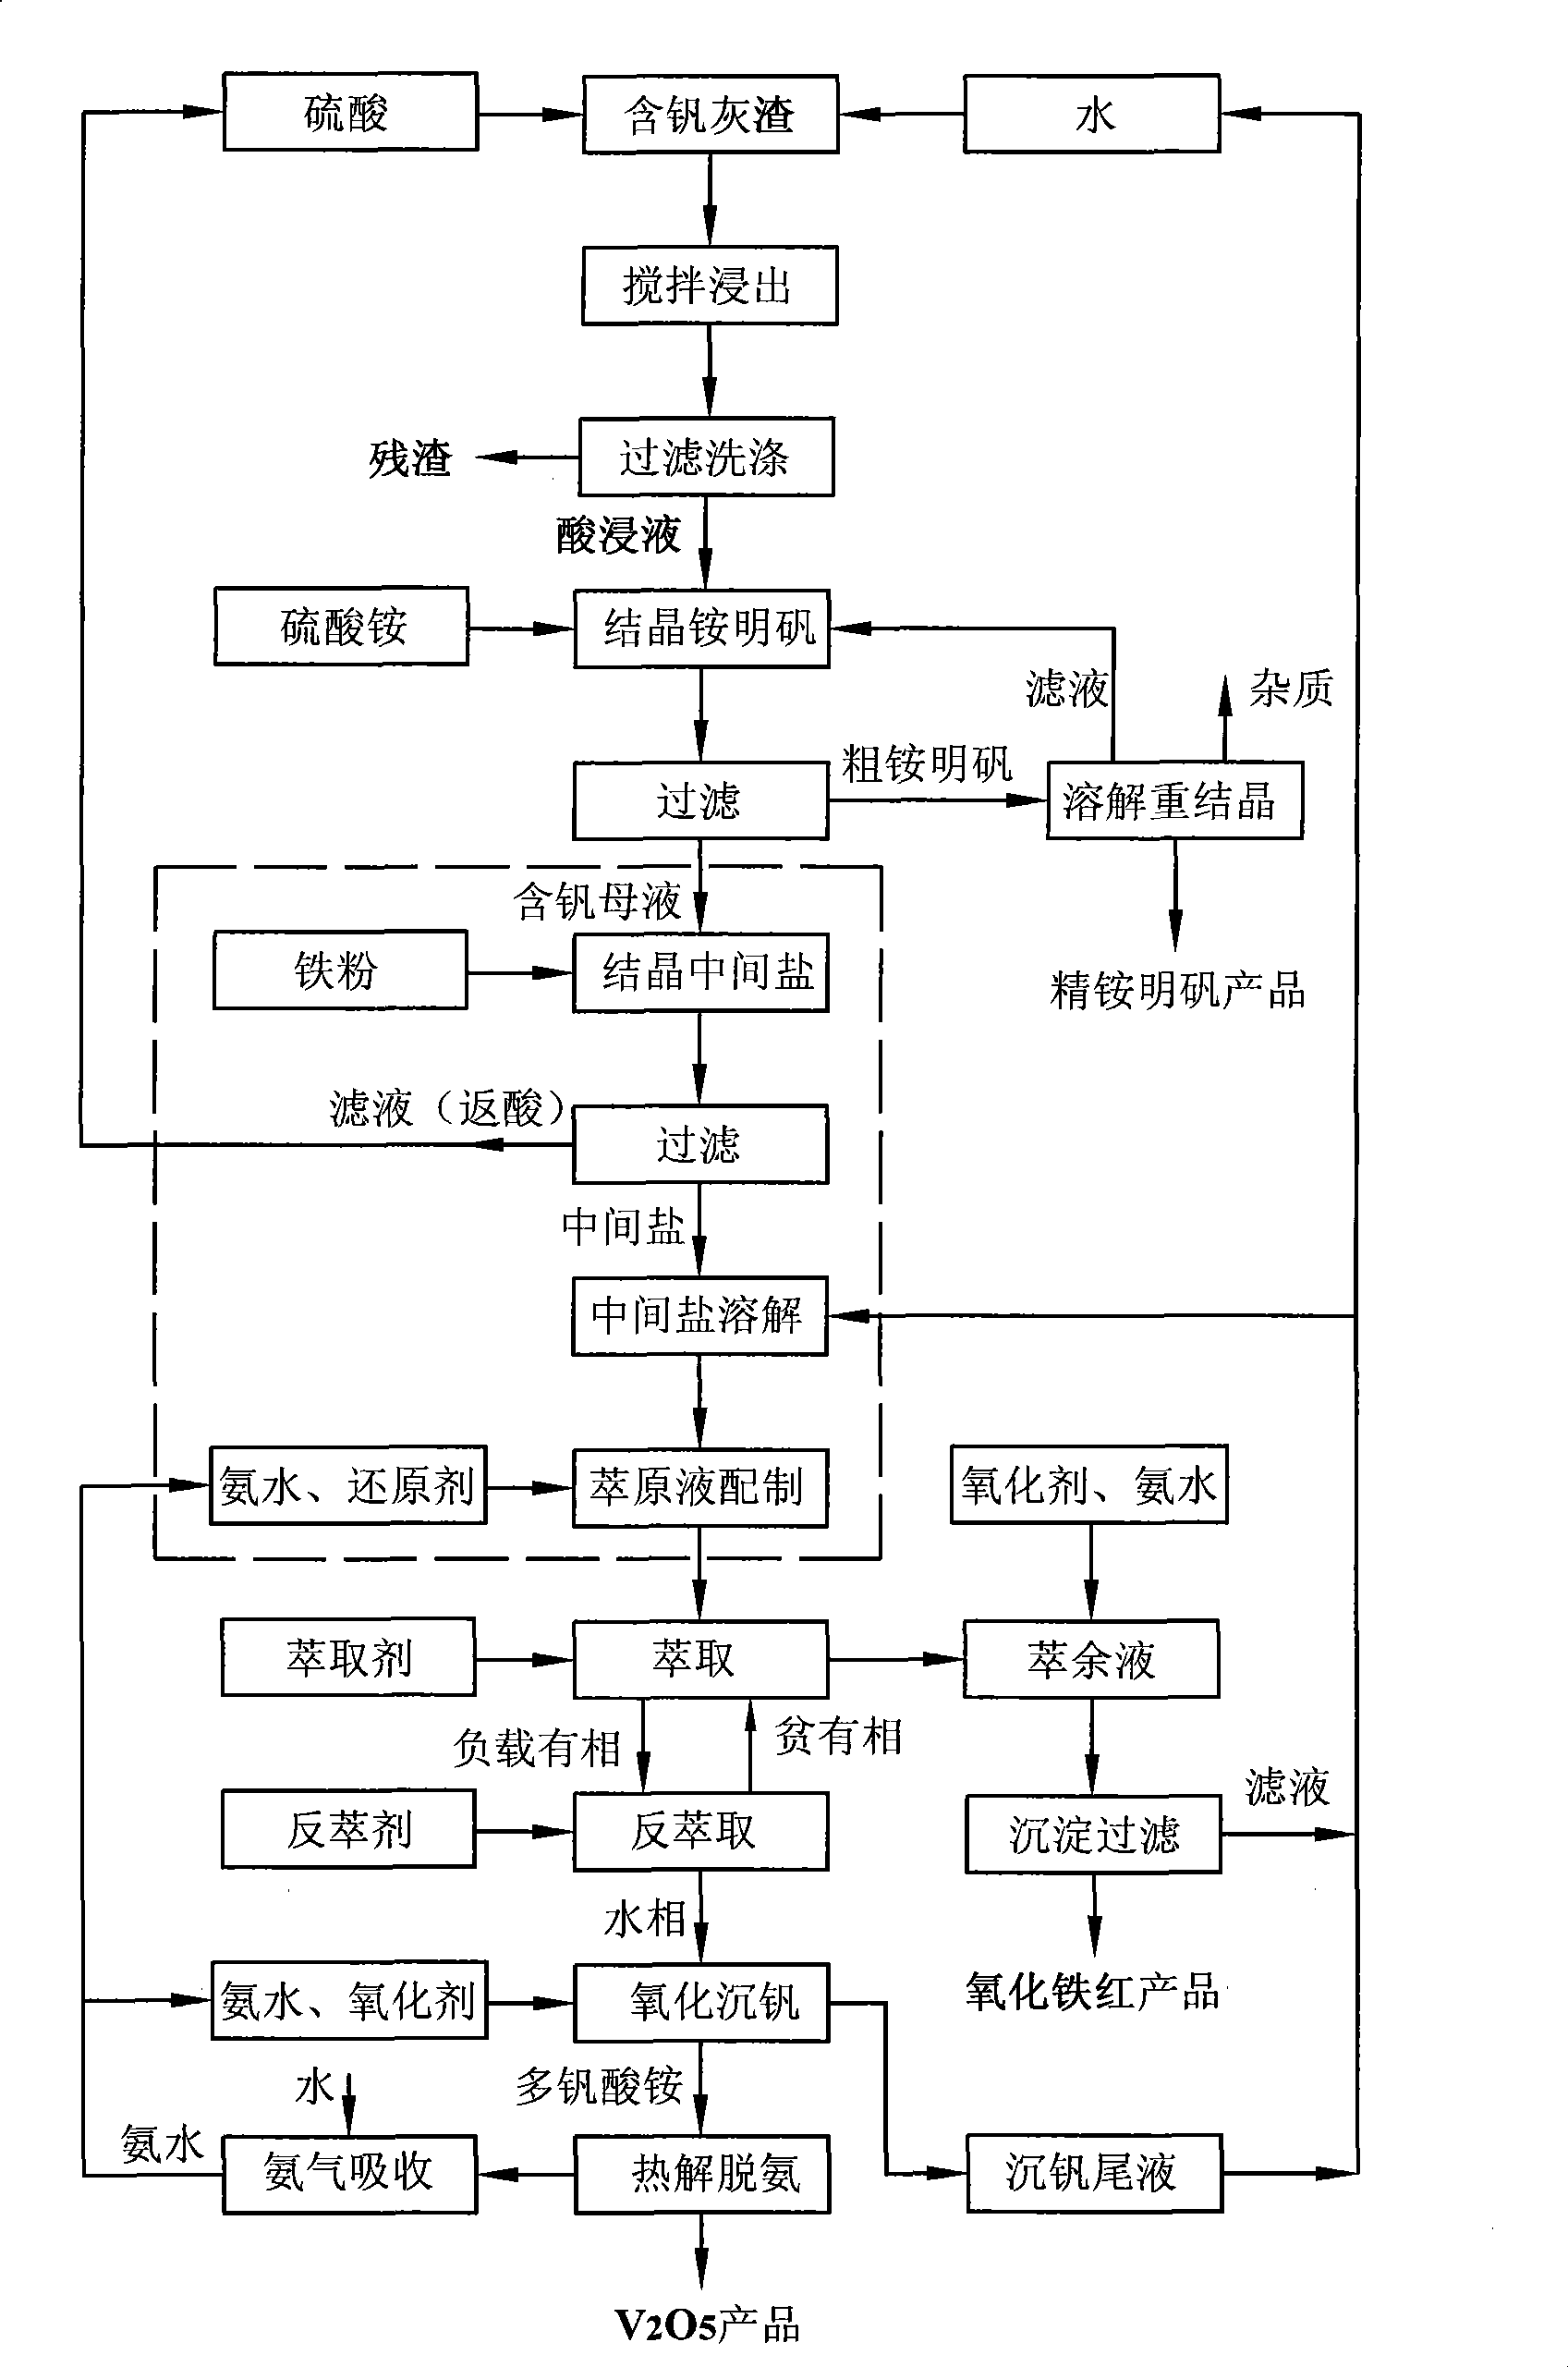 Method for preparing intermediate salt during acid leaching and extraction of vanadium pentoxide from vanadium-containing stone coal ash